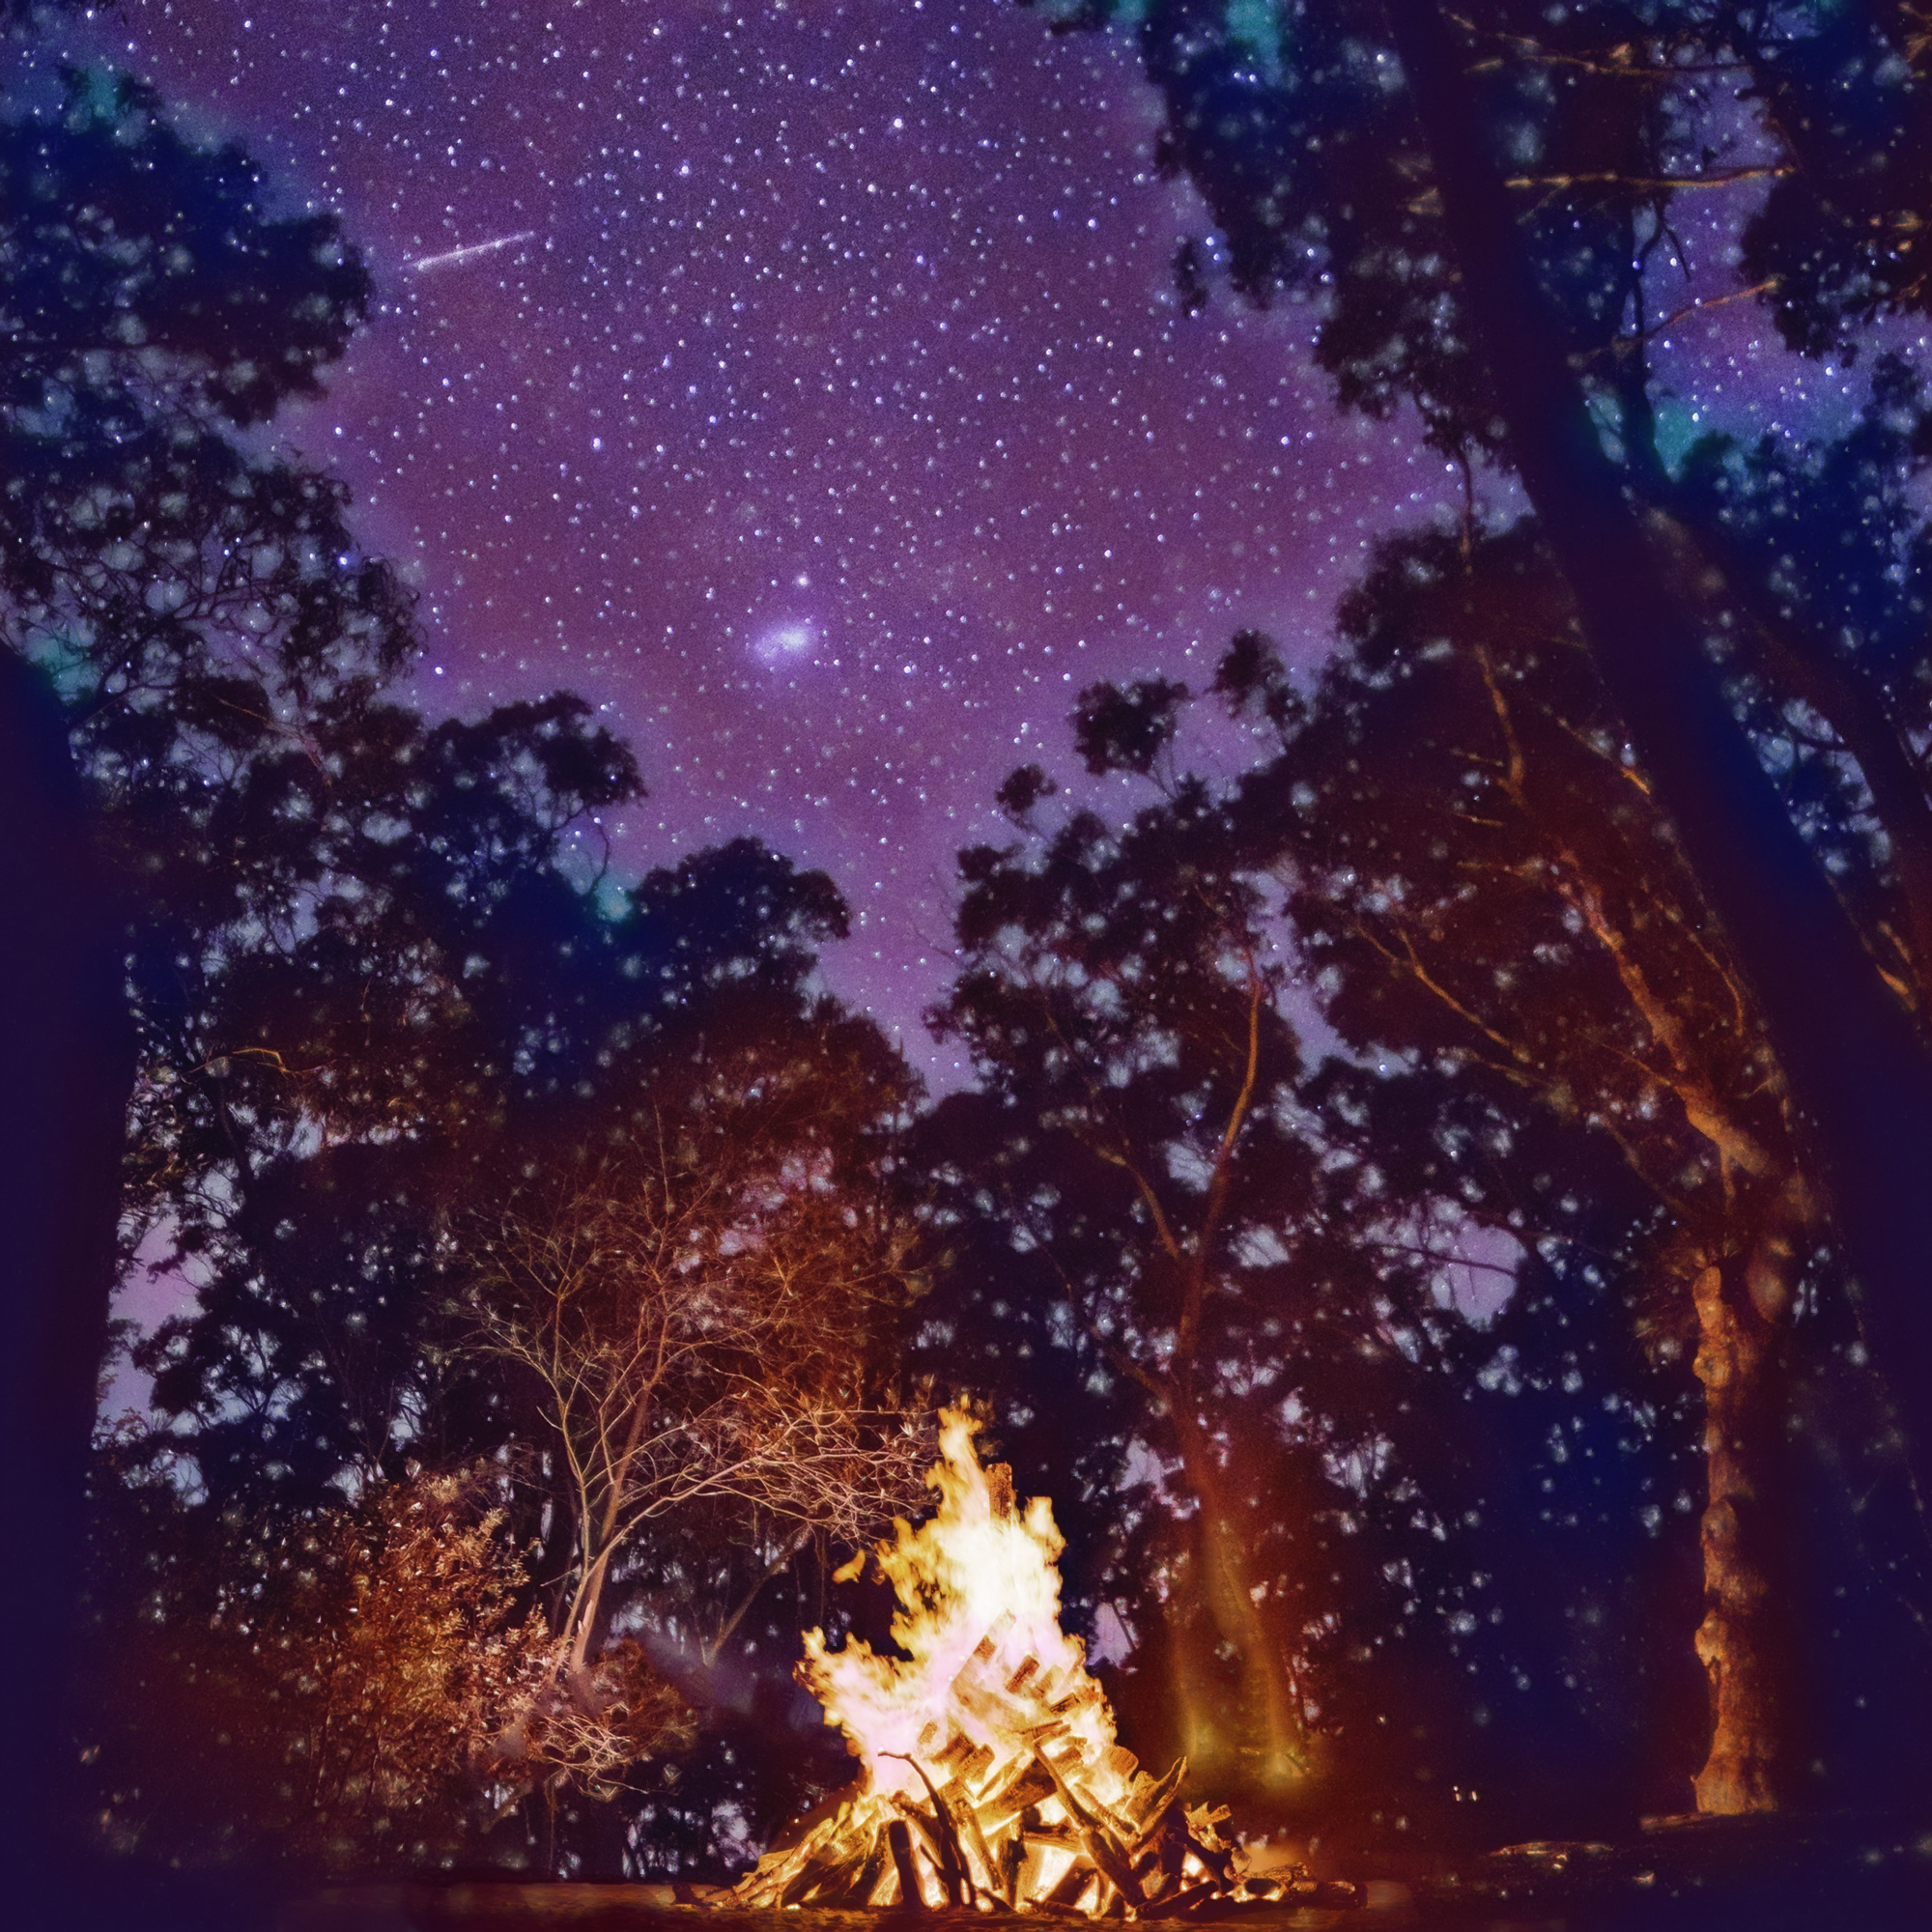 無料イラスト 背景画像素材 綺麗な夜空と燃える炎のキャンプファイヤーと輝く星々の森林と自然の中の夜の壁紙 Free Illustlation くりえいてぃぶ